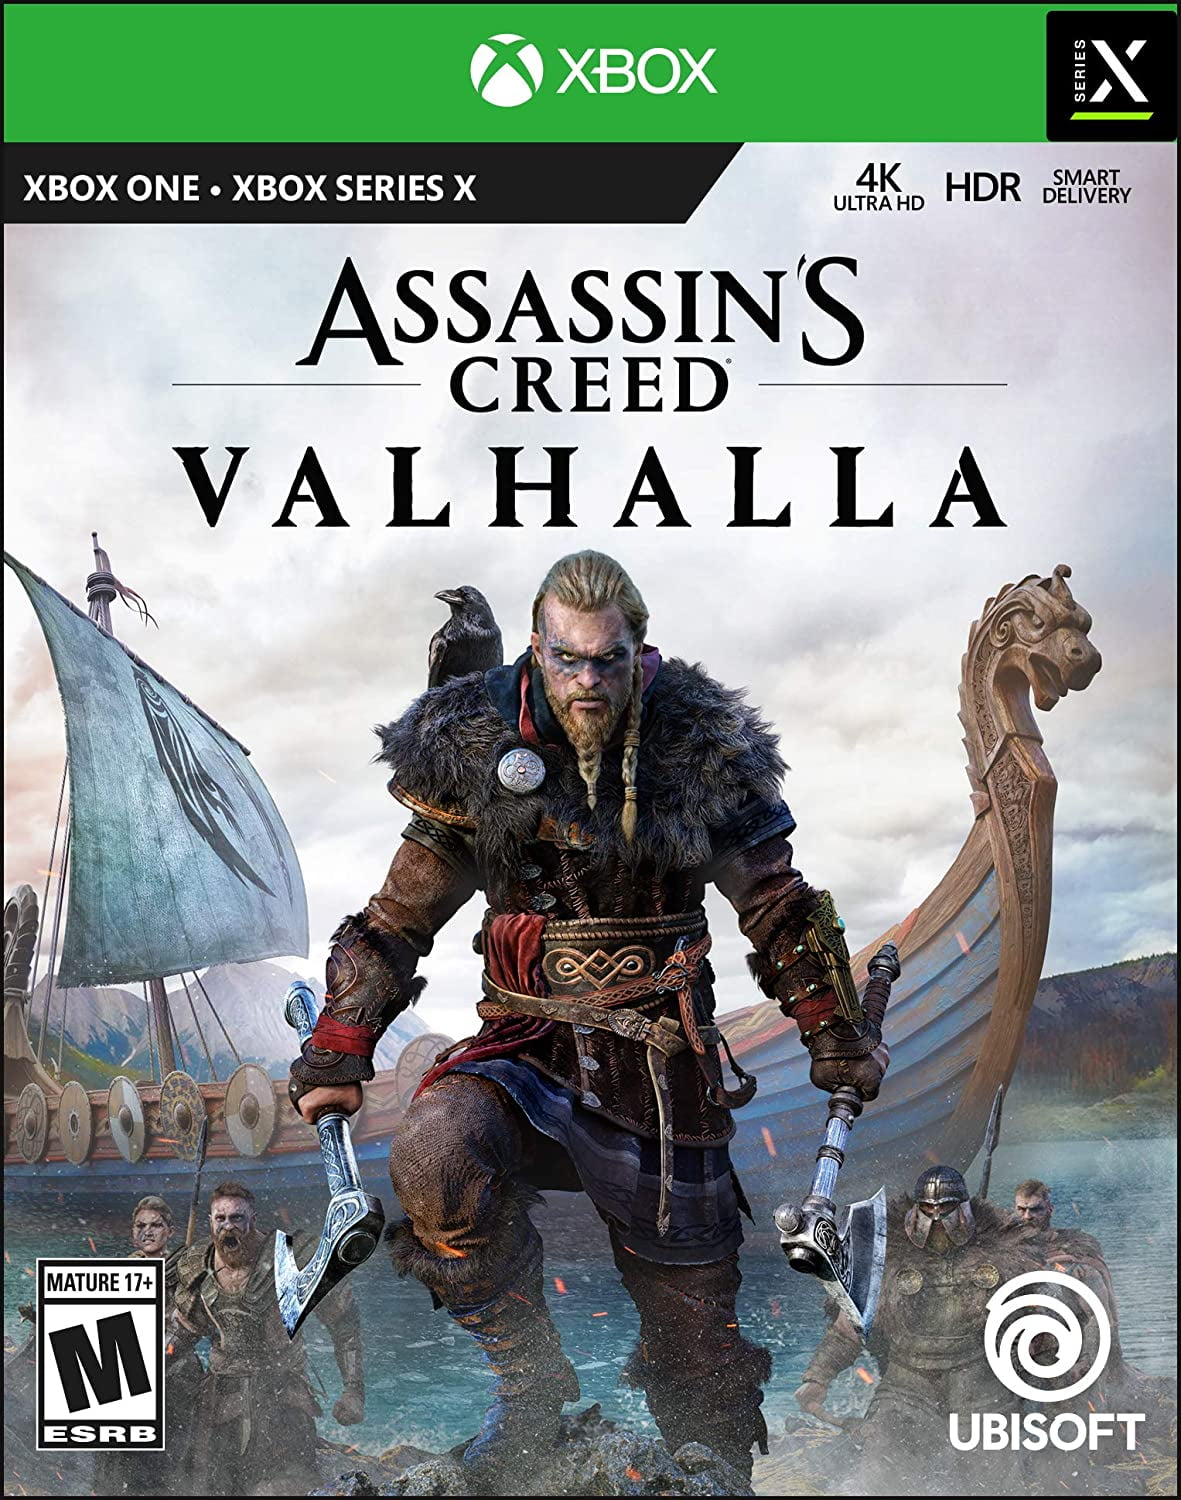 Assassins Creed Valhalla Ps5